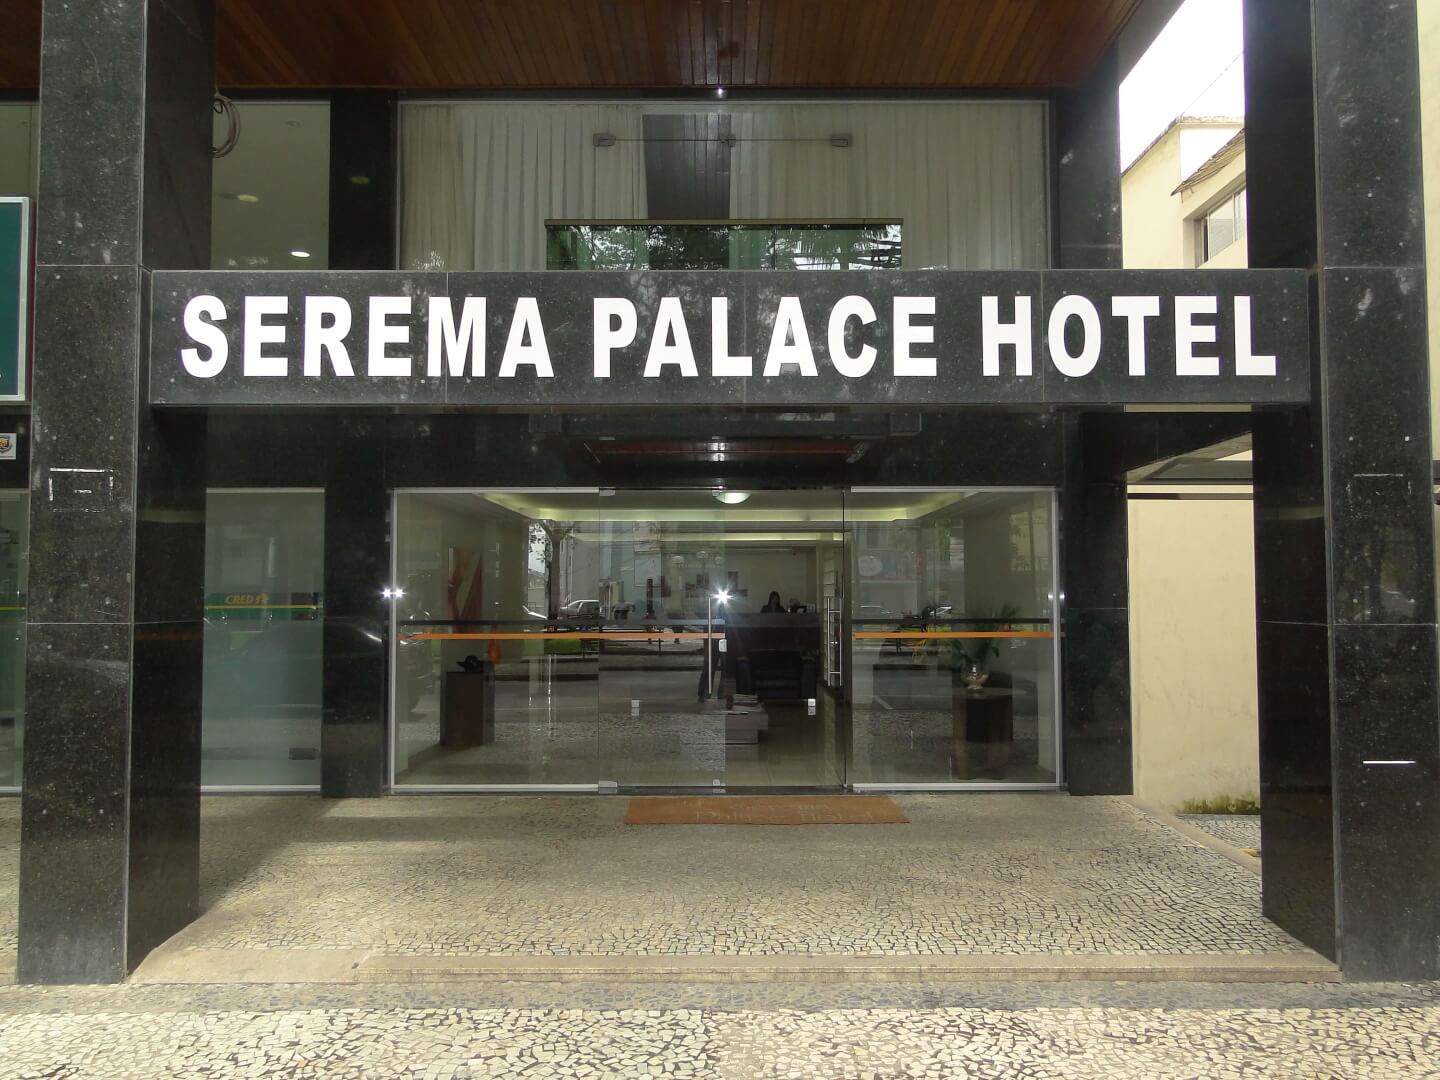 Serema Palace Hotel no centro de Lavras MG. Acomodações, Suítes e Quartos luxuosos com café da manhã incluso. Faça sua reserva.